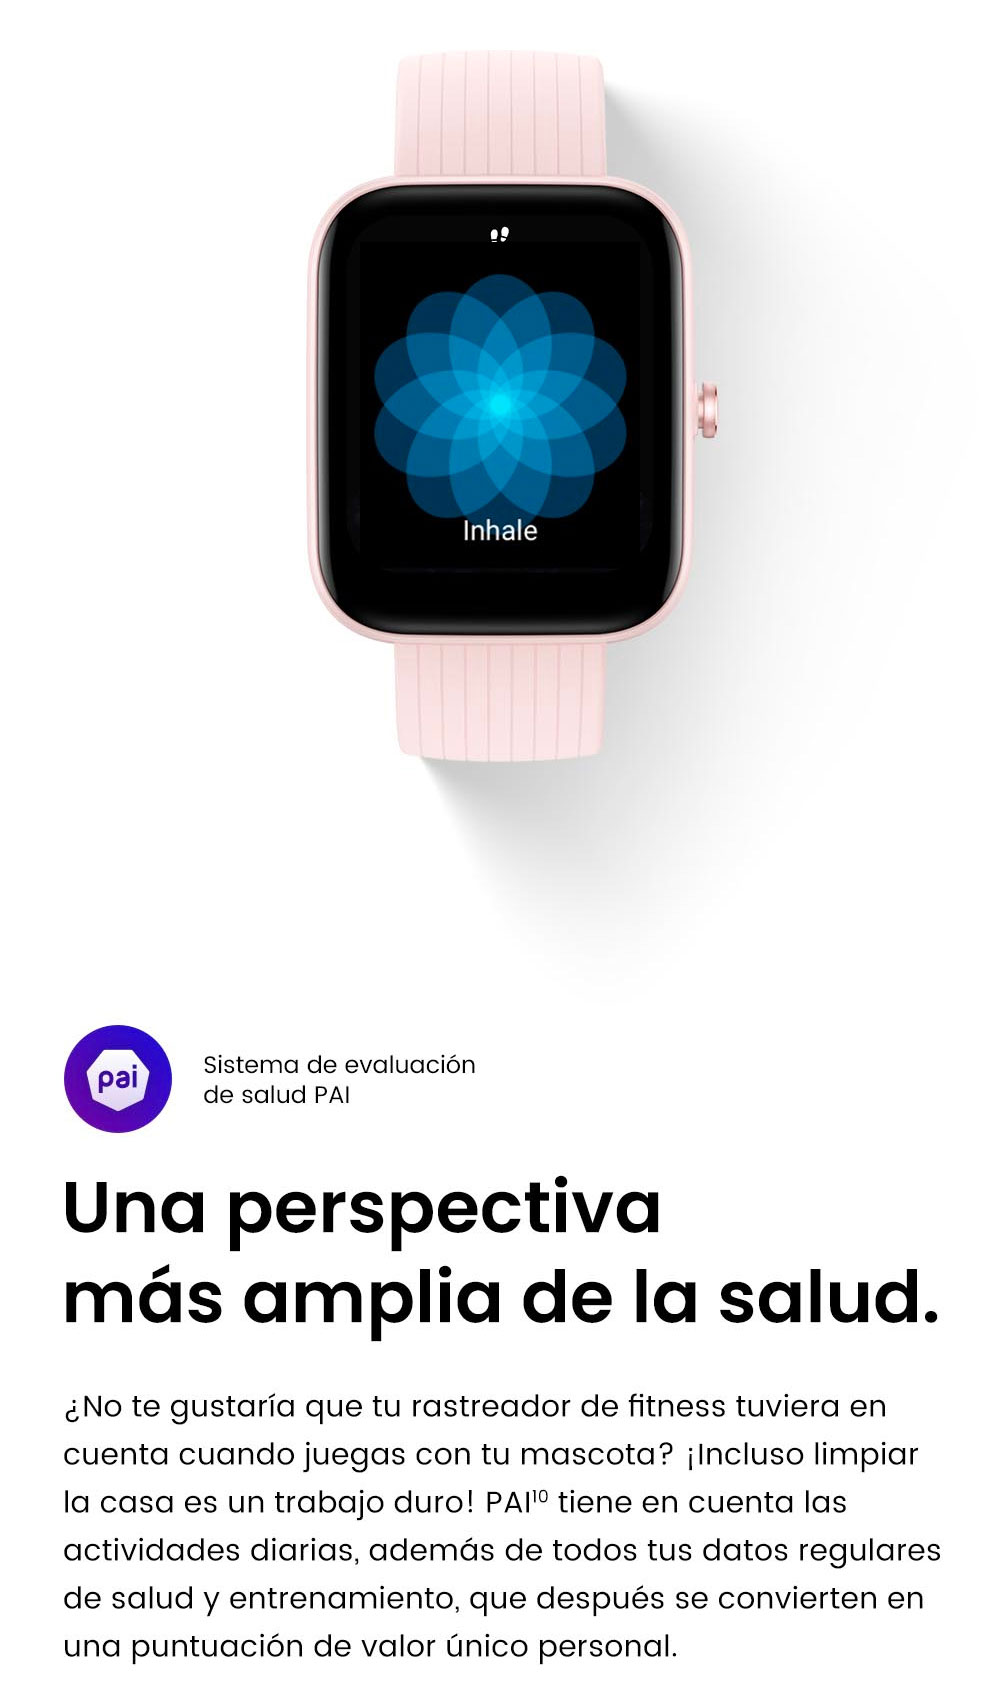  Amazfit Bip 3 Pro - Reloj inteligente para Android iPhone y Bip  3 Pro para mujer, 4 sistemas de posicionamiento satelital, pantalla a color  de 1.69 pulgadas, batería de 14 días